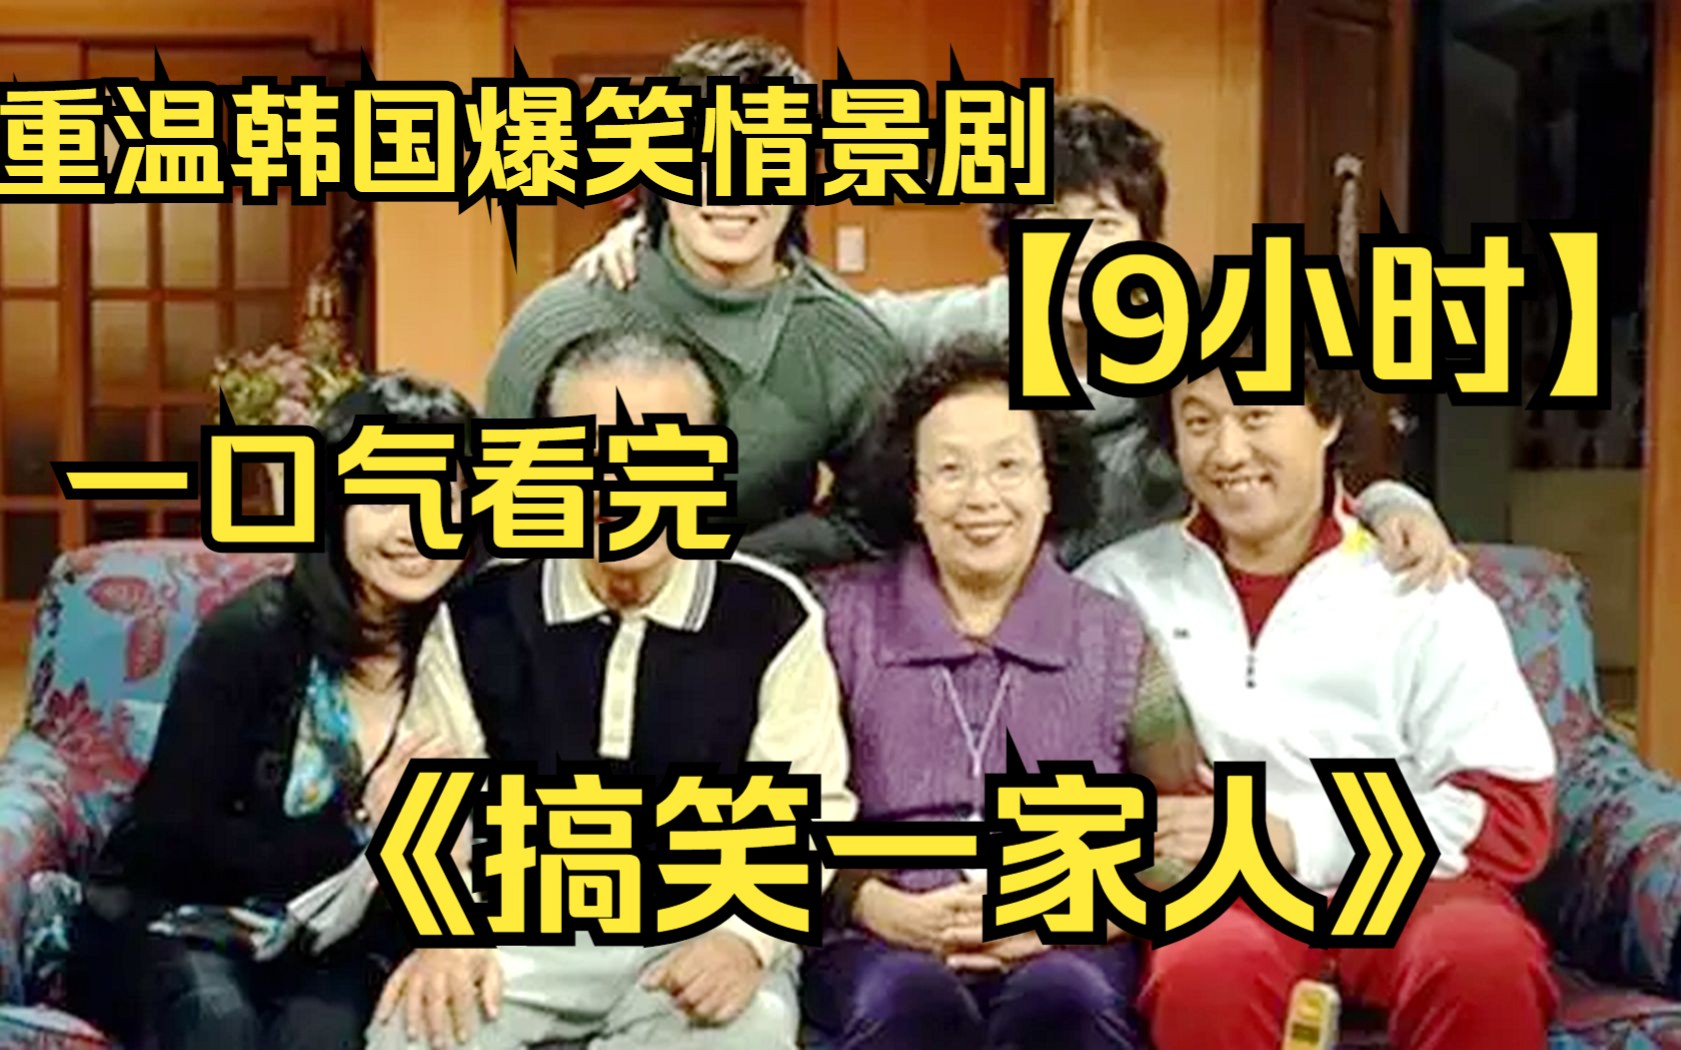 【9小时】一口气看完韩国爆笑情景喜剧《搞笑一家人》重温经典爆笑合集，爷青回！